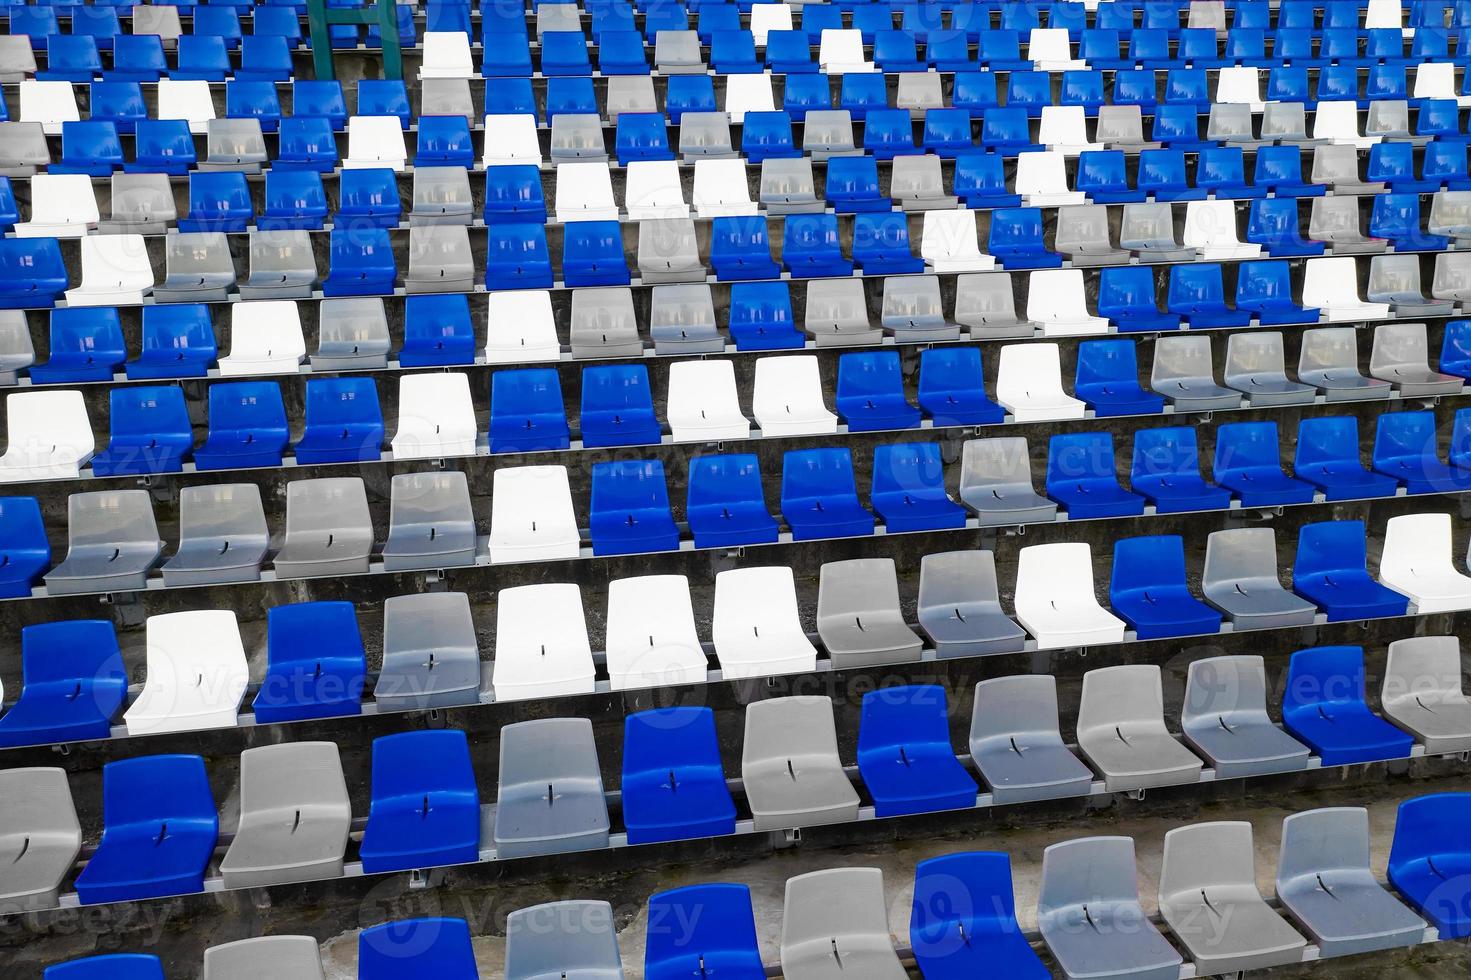 stadions amfitheater lege plastic stoelen in het stadion. veel lege stoelen voor toeschouwers op de tribunes voor voetbalfans en andere buitensporten. Een plek die de overheid creëert voor het publiek. foto